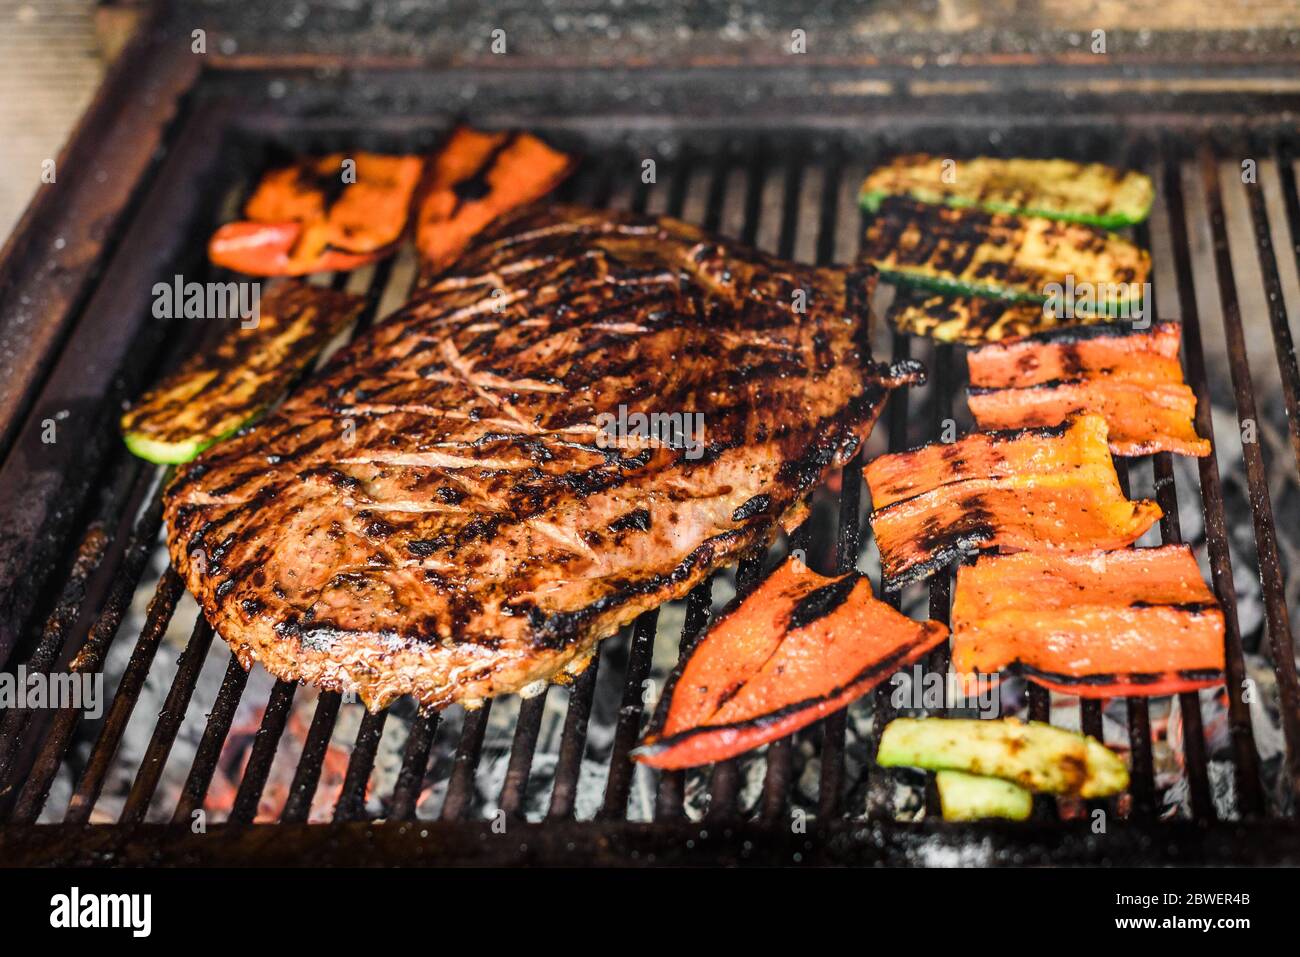 La cuisson du bœuf angus Bavette de boeuf mariné sur des charbons ardents, barbecue. La préparation de la viande saignante juteuse sur la grille chaude barbecue avec grill marques en restauran Banque D'Images